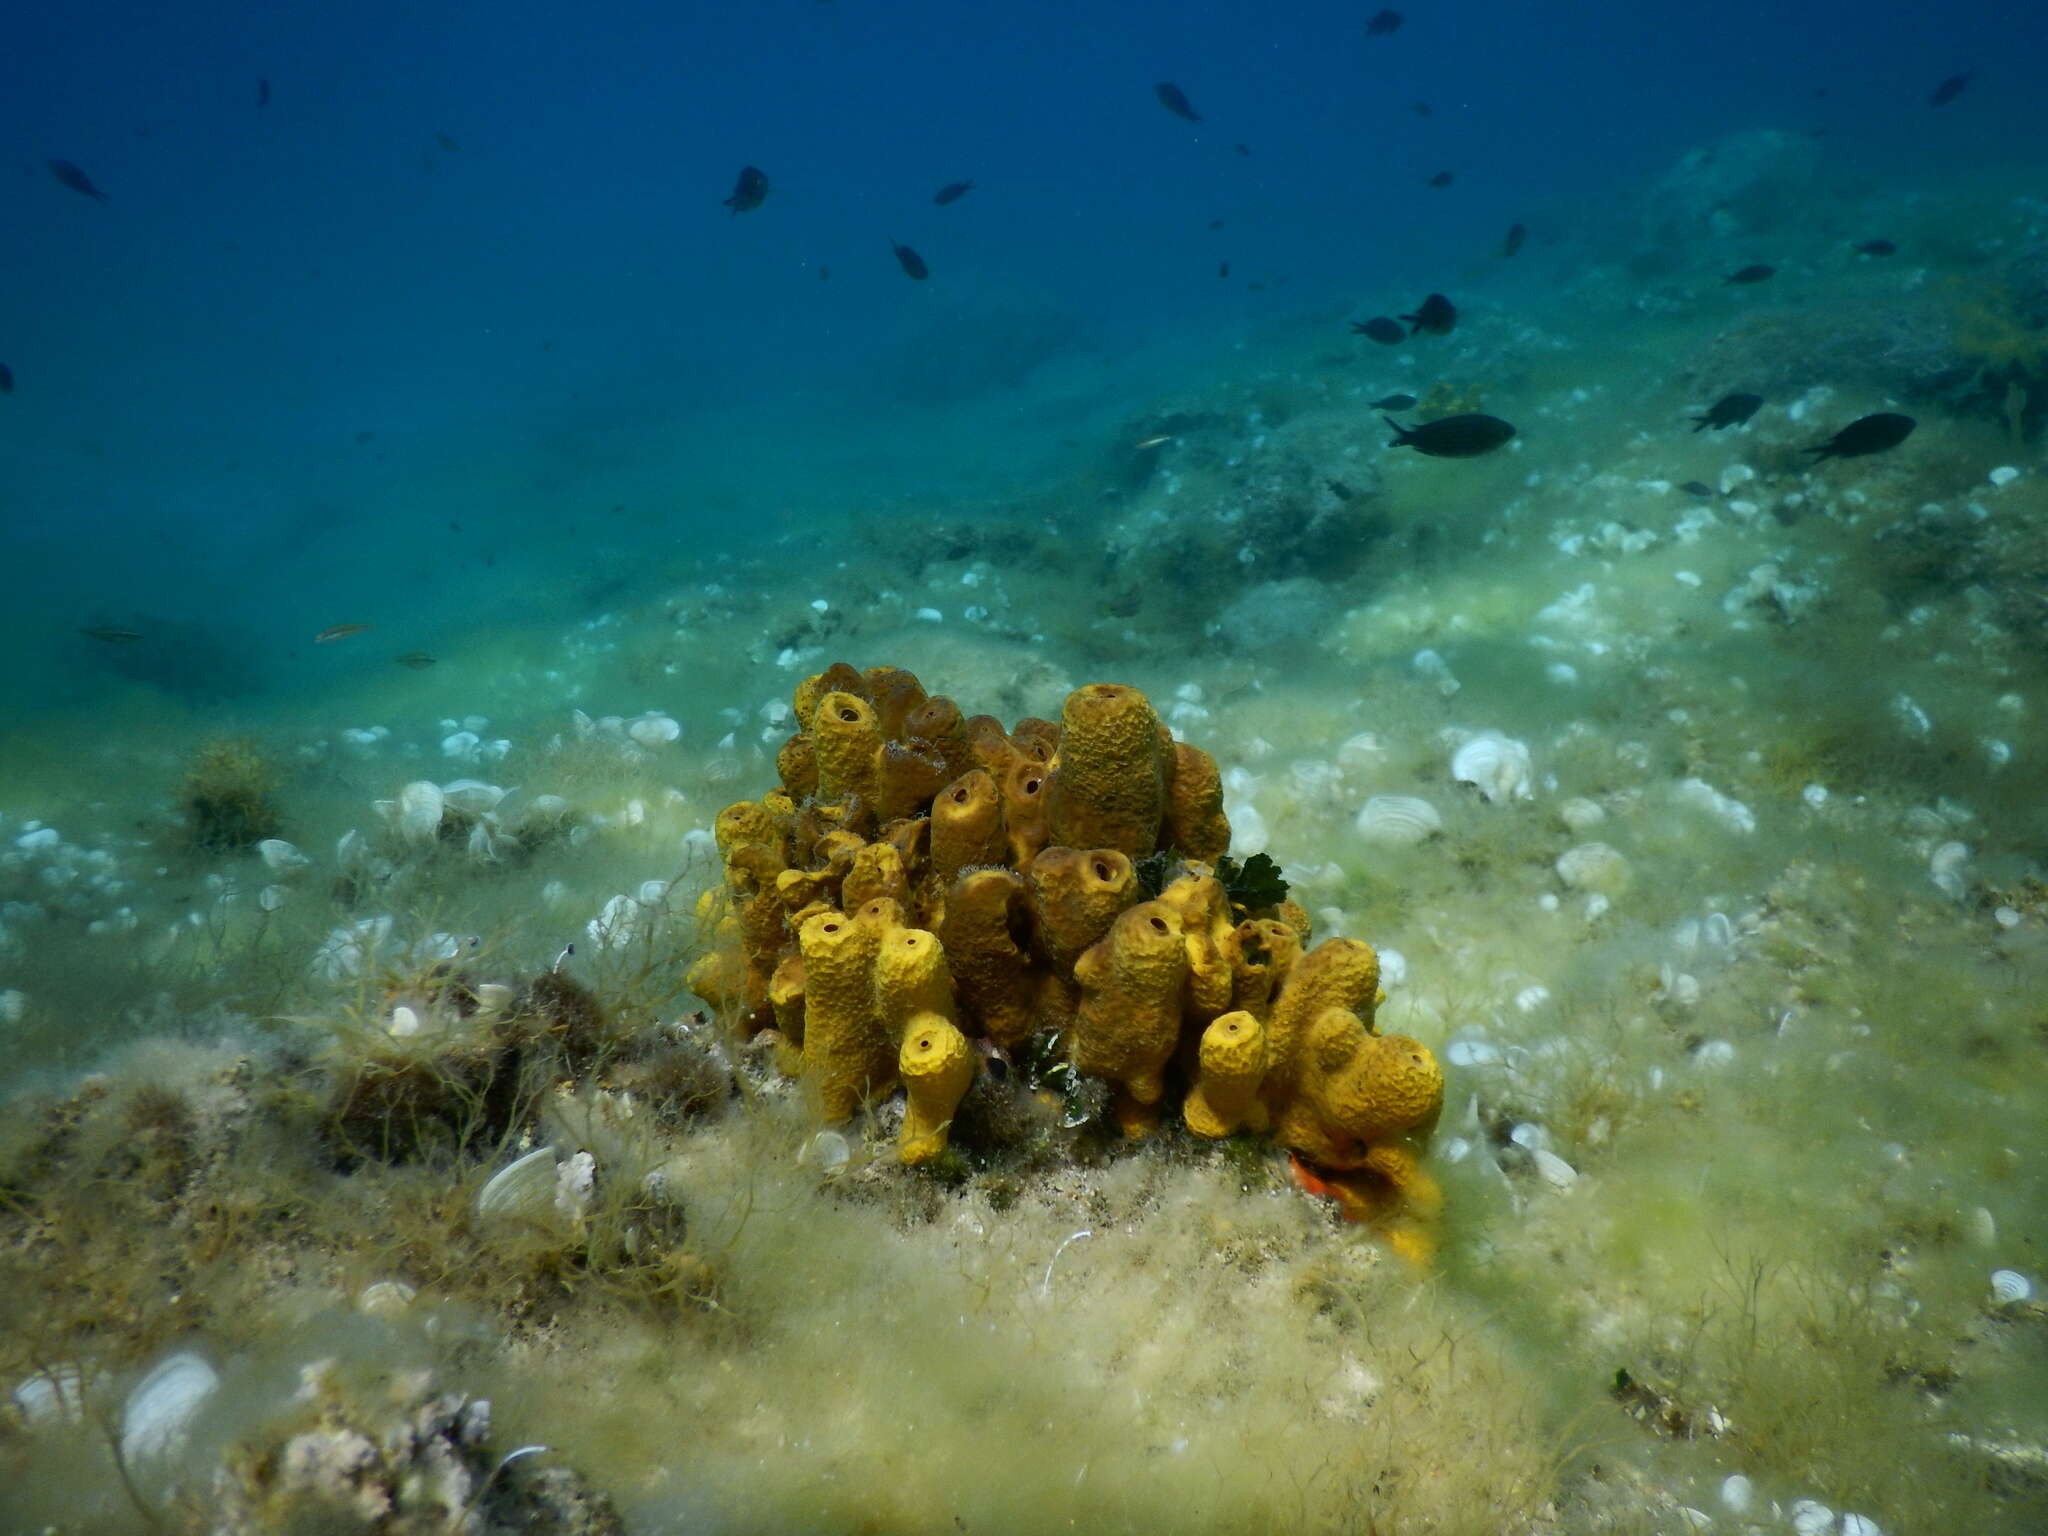 Image of aureate sponge